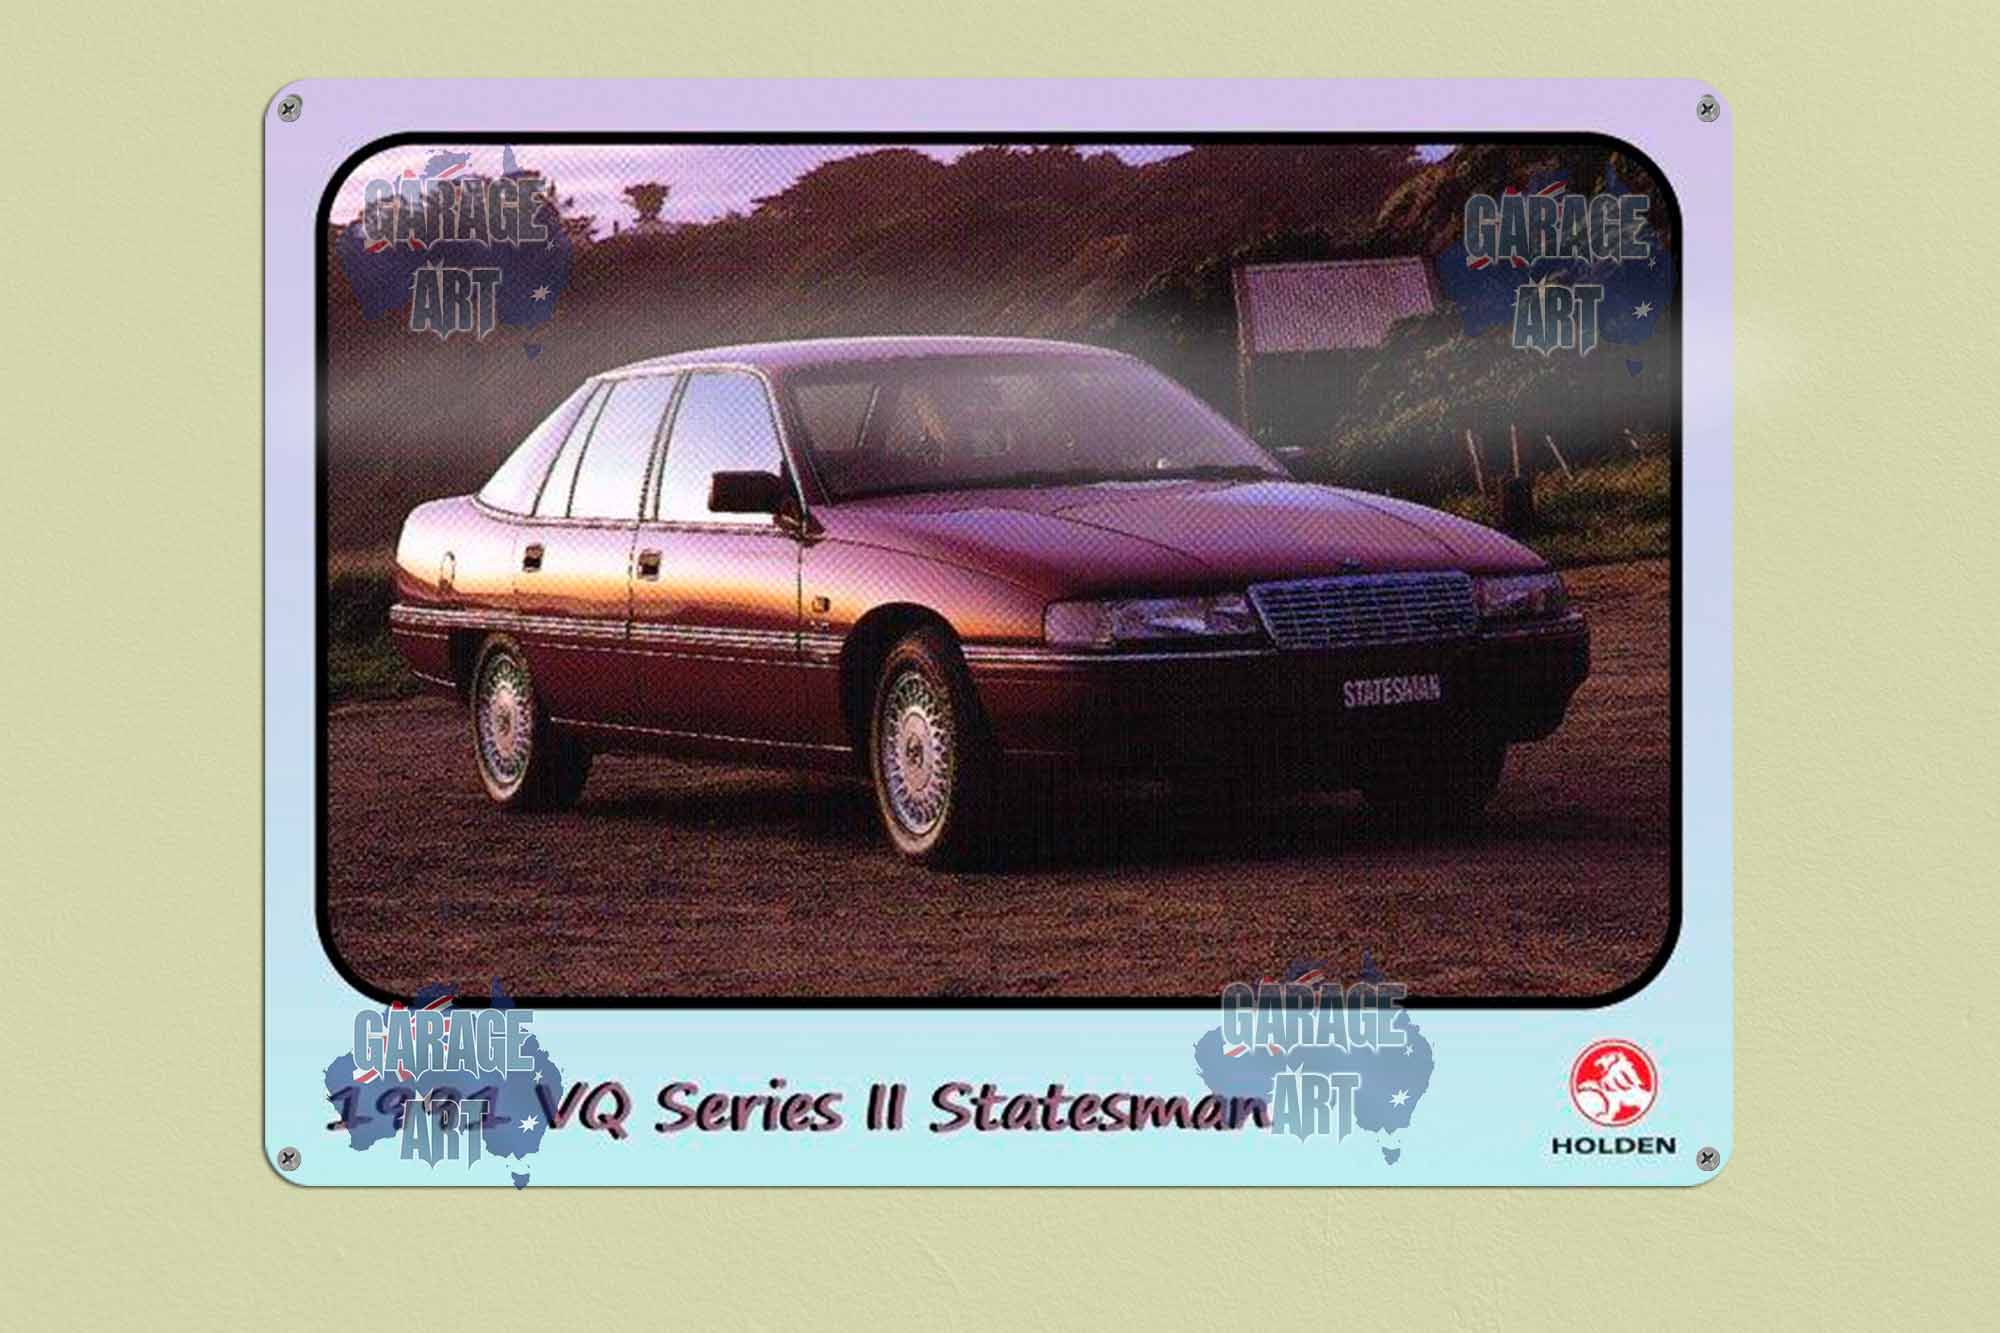 1991 Holden VQ Series II statesman Tin Sign freeshipping - garageartaustralia